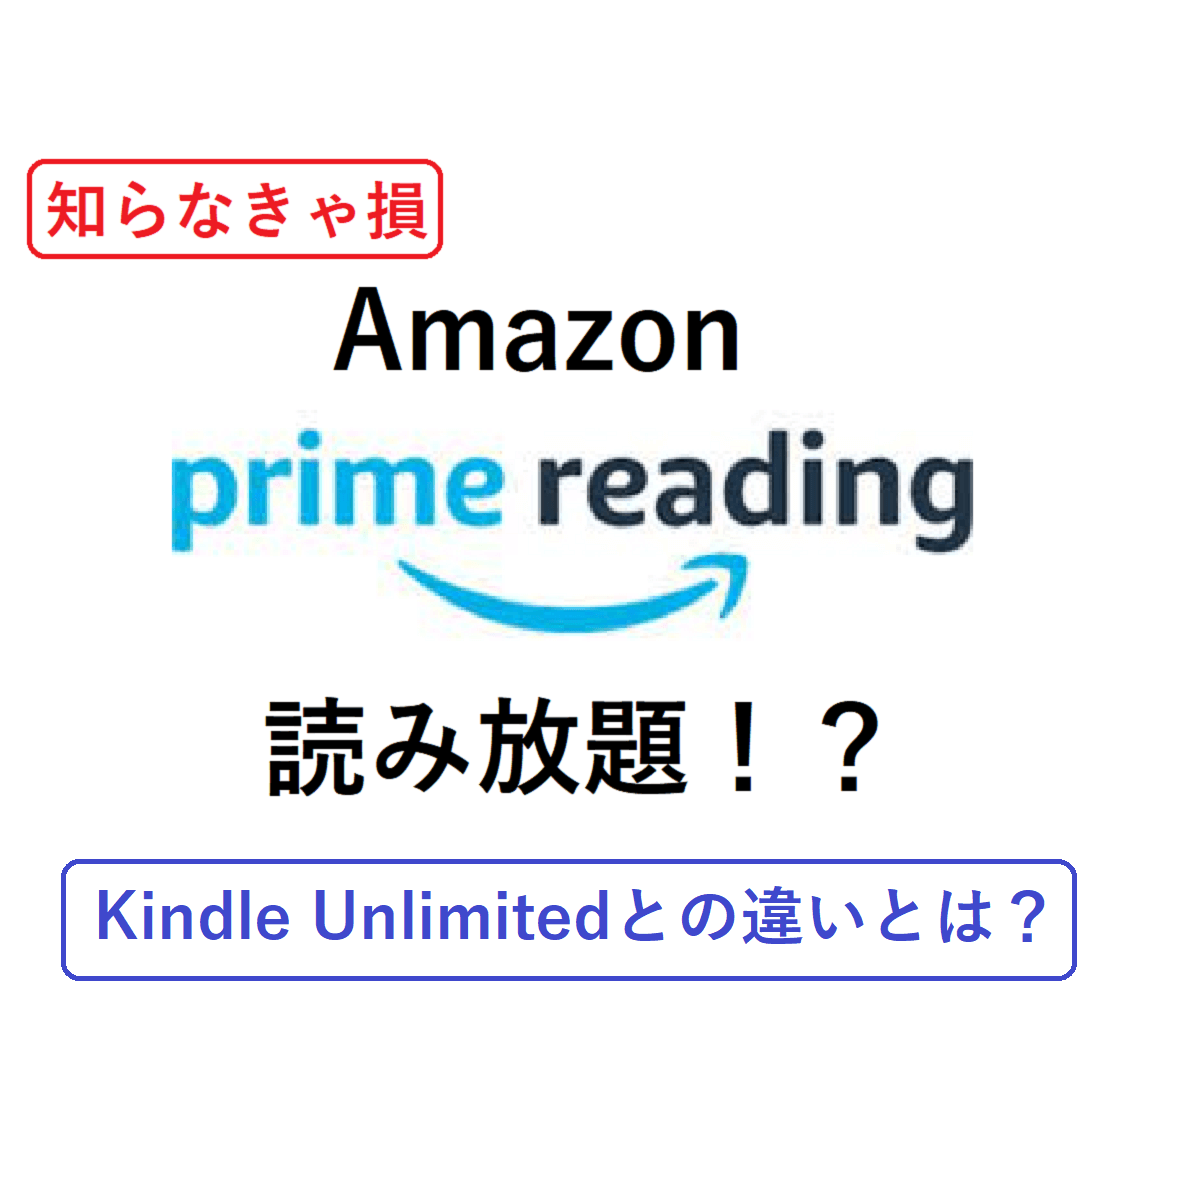 「知らなきゃ損　Amazon prime reading　読み放題!?　Kindle Unlimitedとの違いとは？」と書かれたサムネイル。